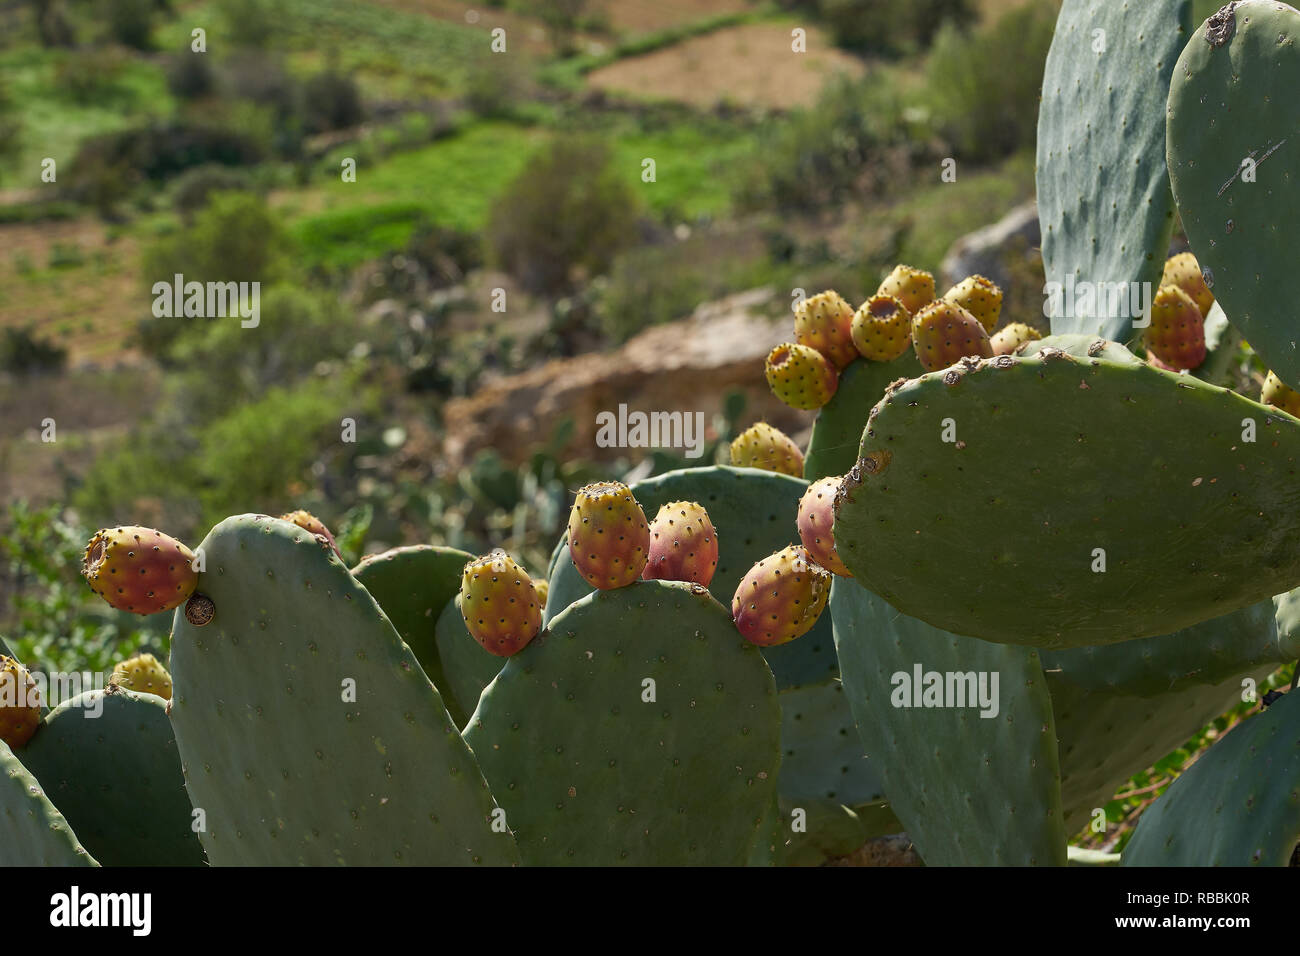 Fichidindia (Opuntia) cresce nel paesaggio mediterraneo. Frutti commestibili dei membri della famiglia di cactus. Foto Stock